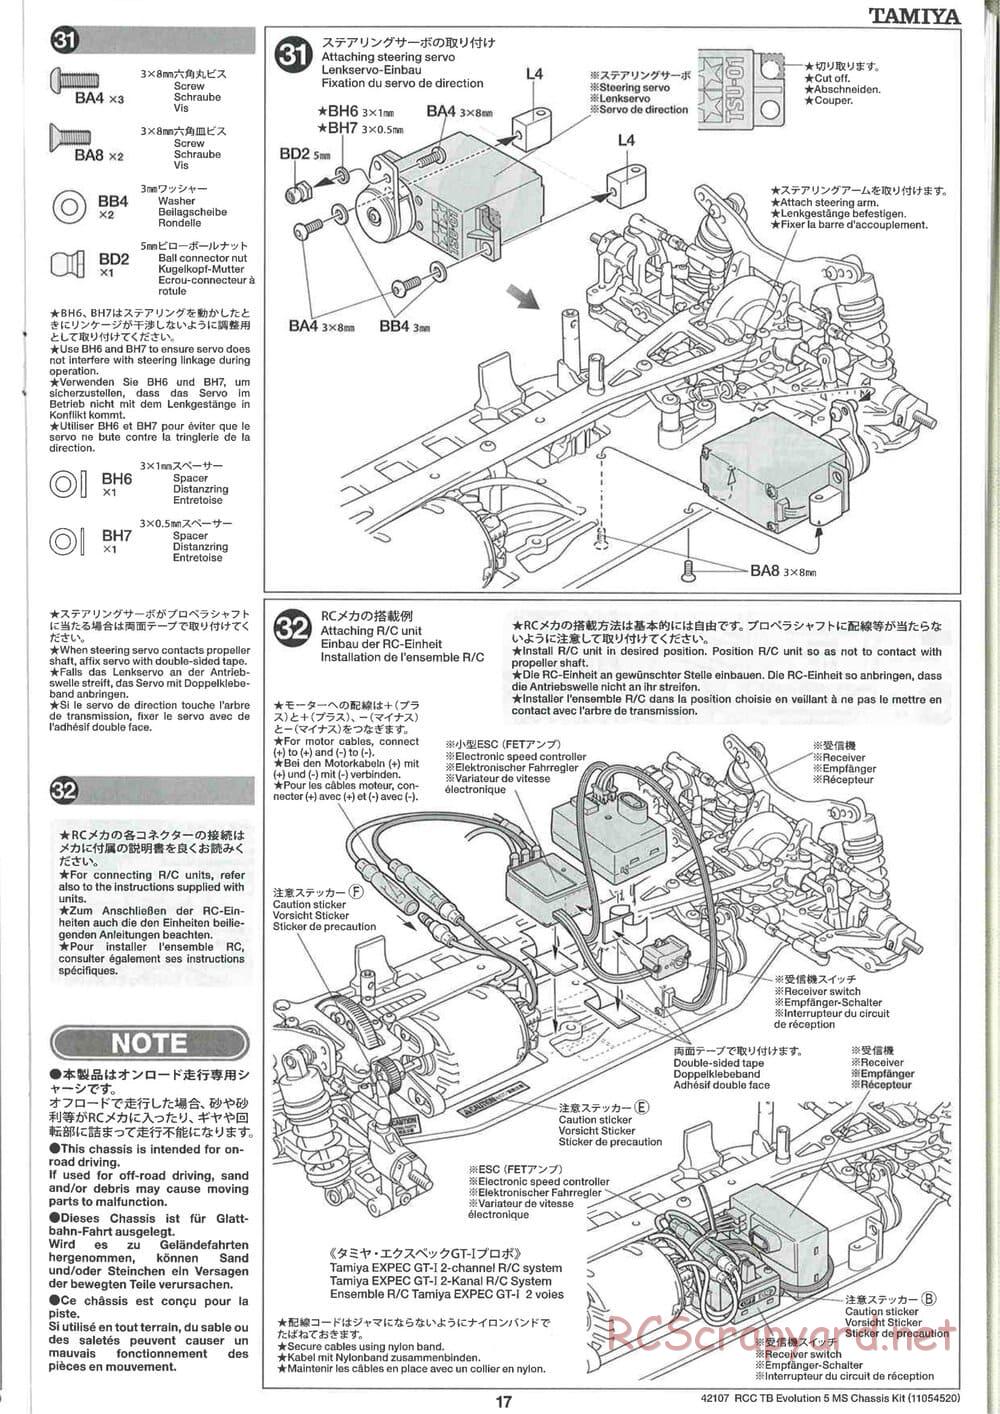 Tamiya - TB Evolution 5 MS Chassis - Manual - Page 17